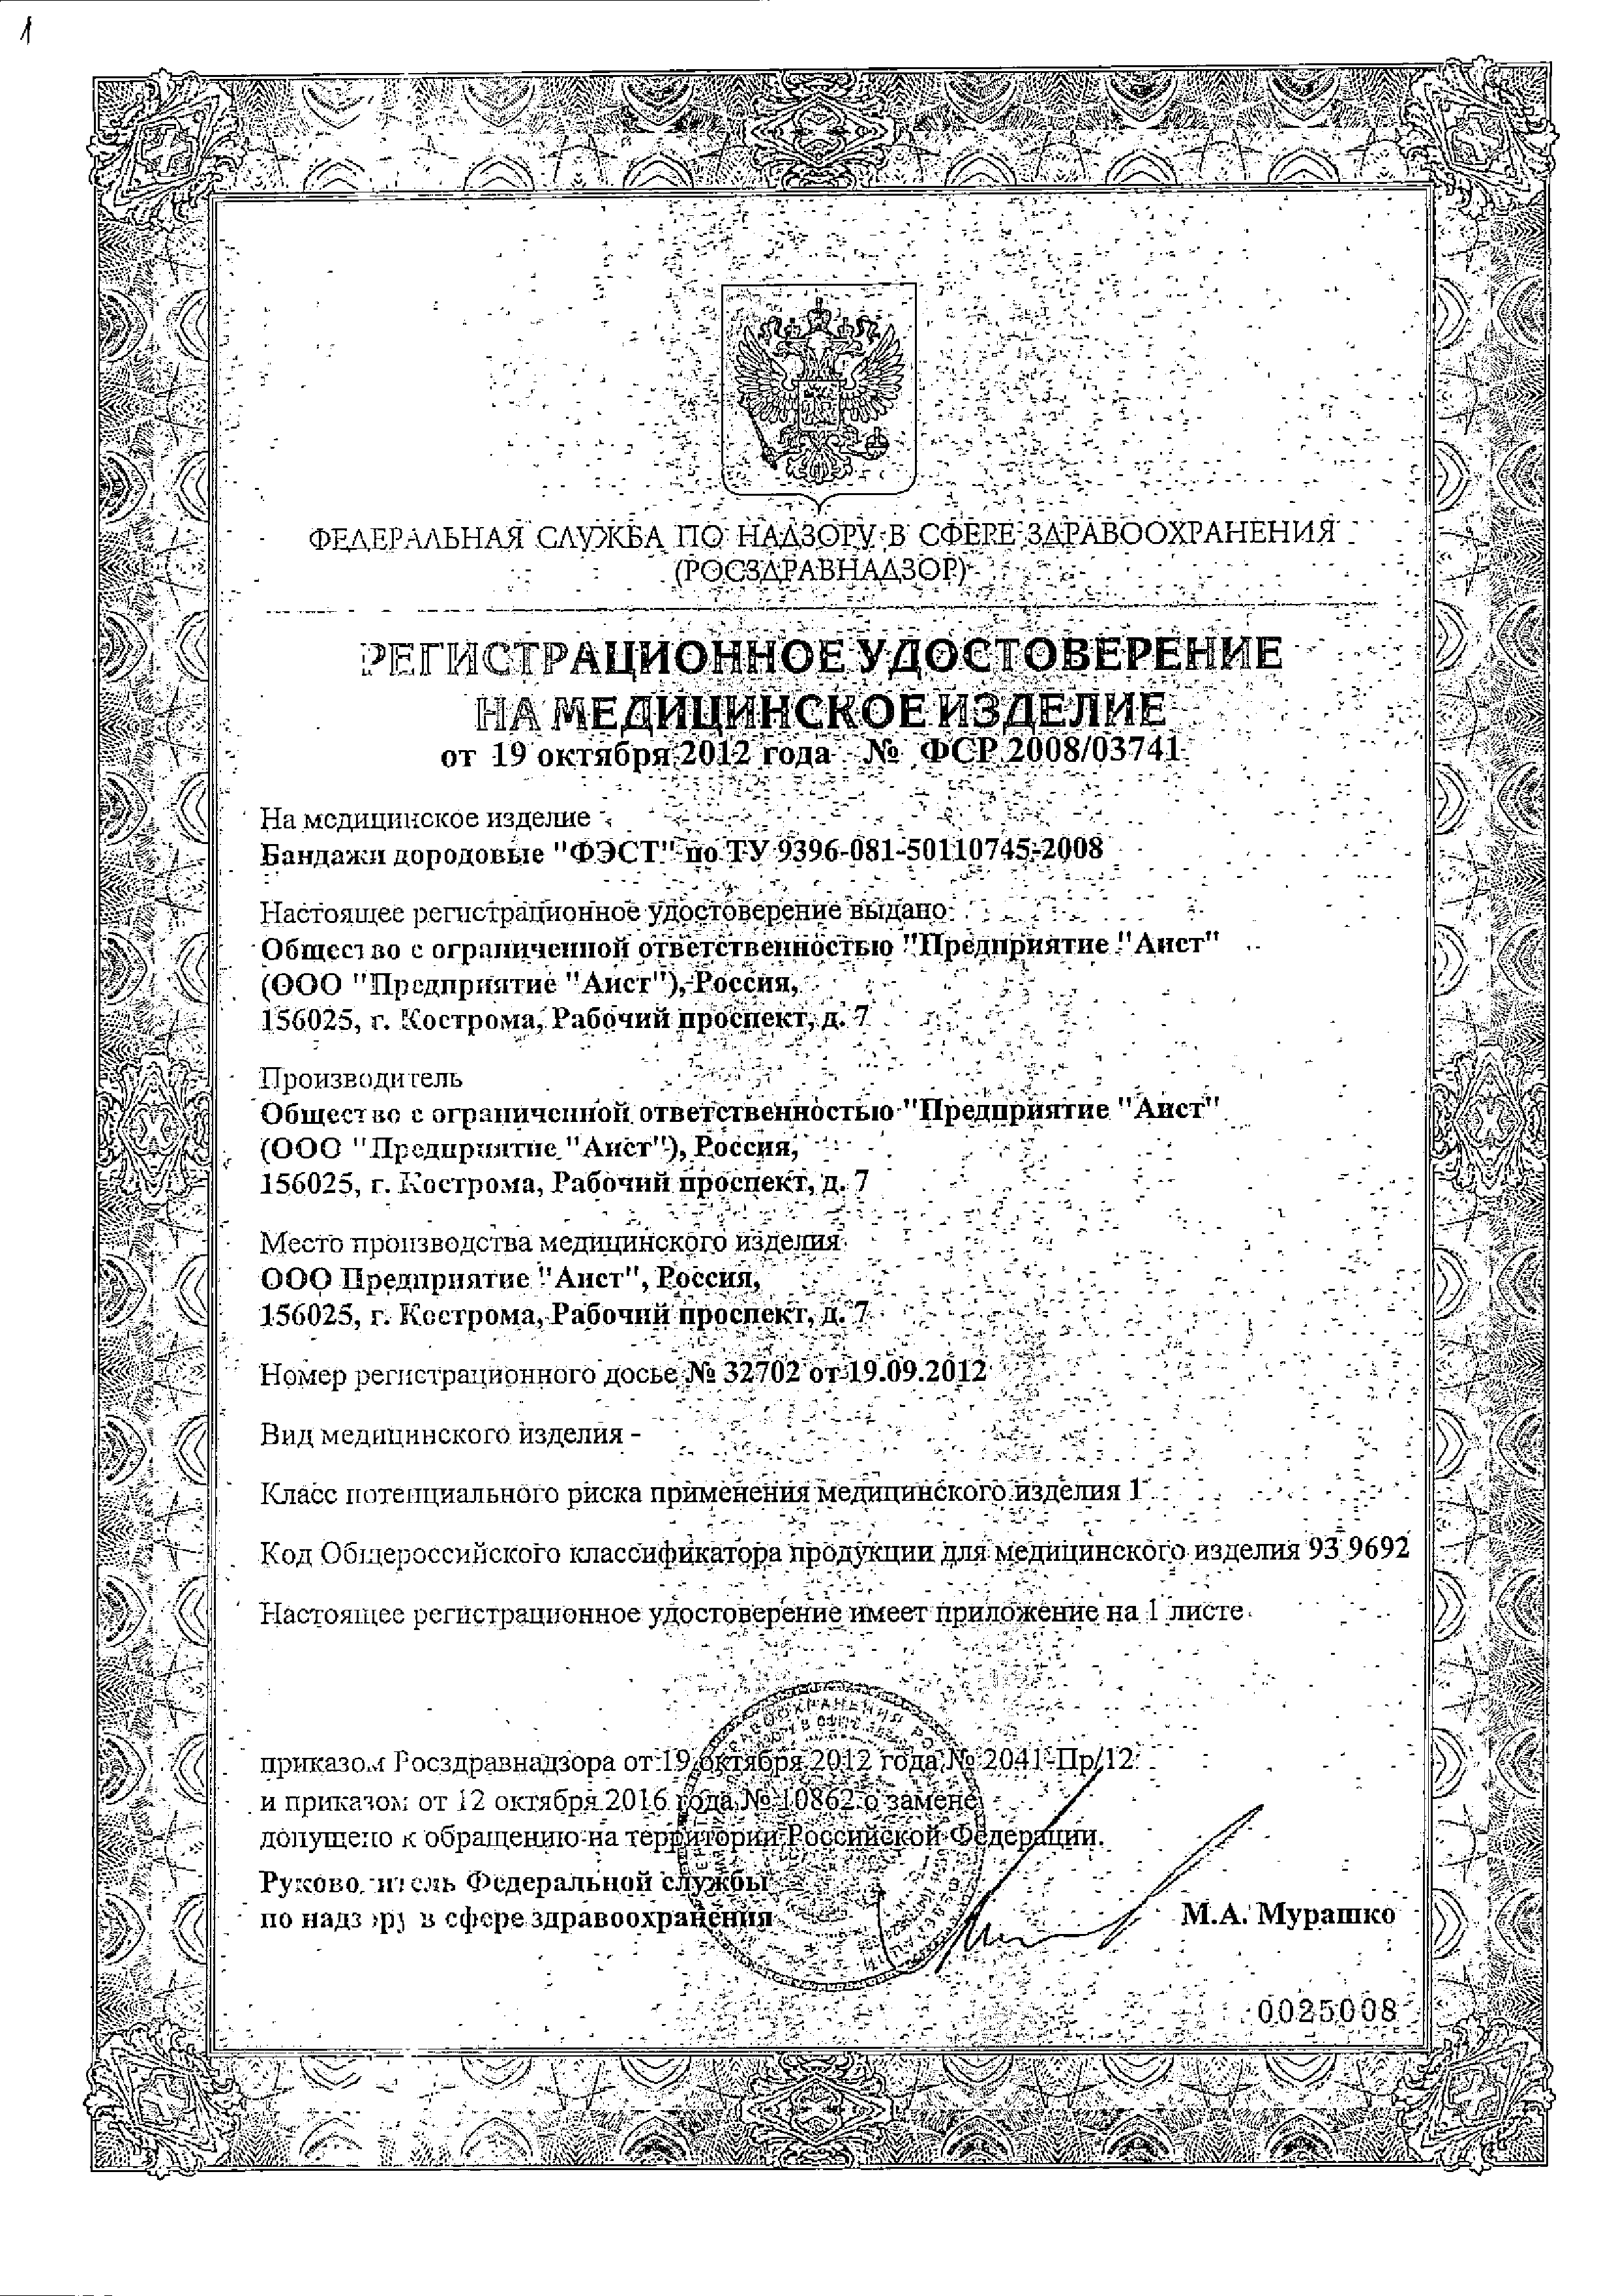 Бандаж дородовой универсальный ФЭСТ сертификат